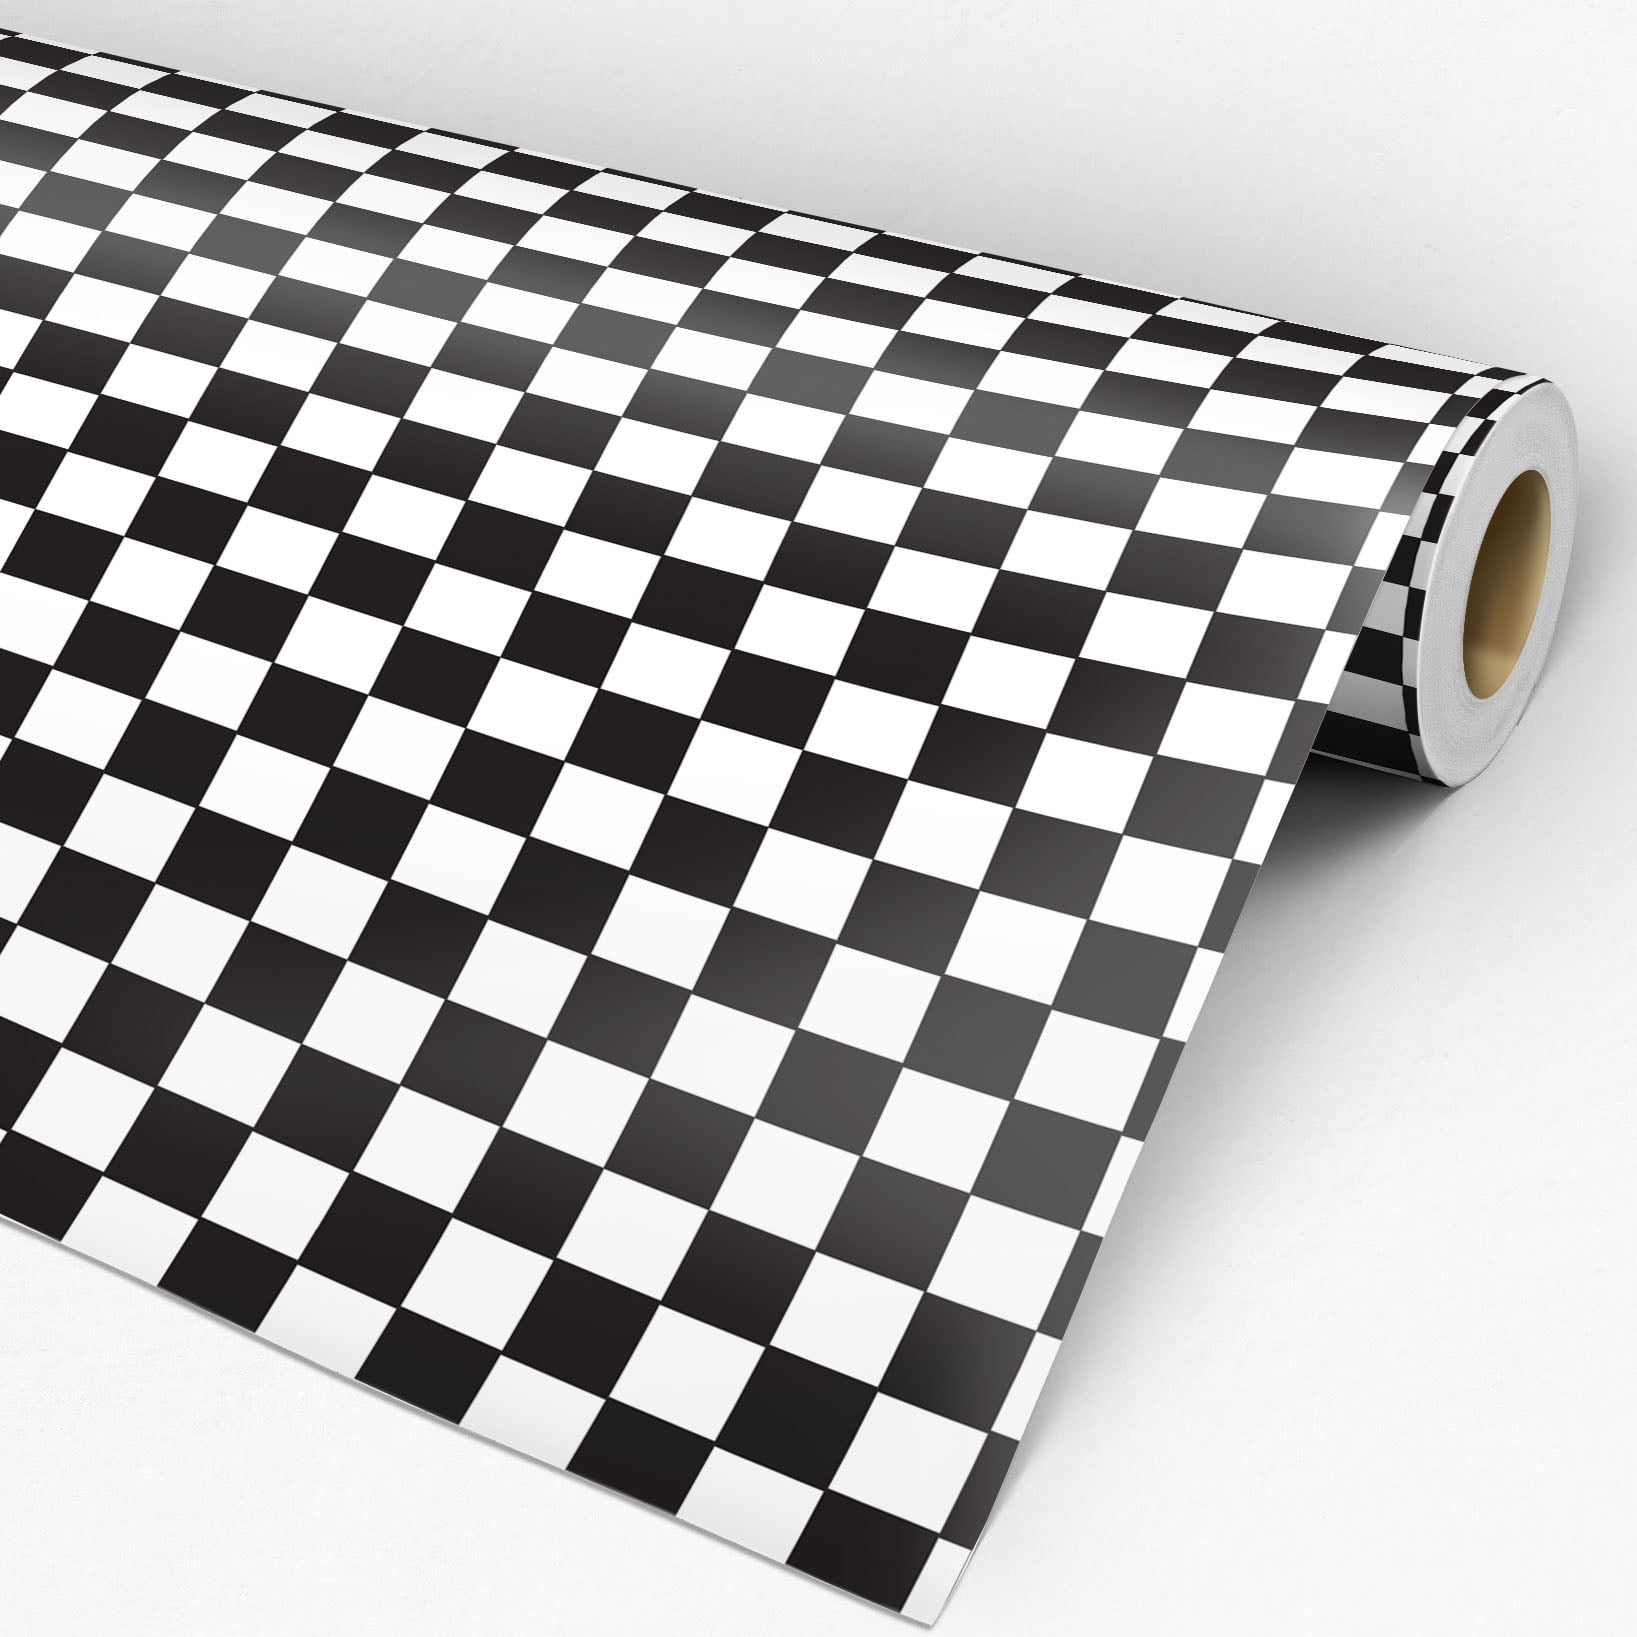 Papel de parede xadrez preto e cinza